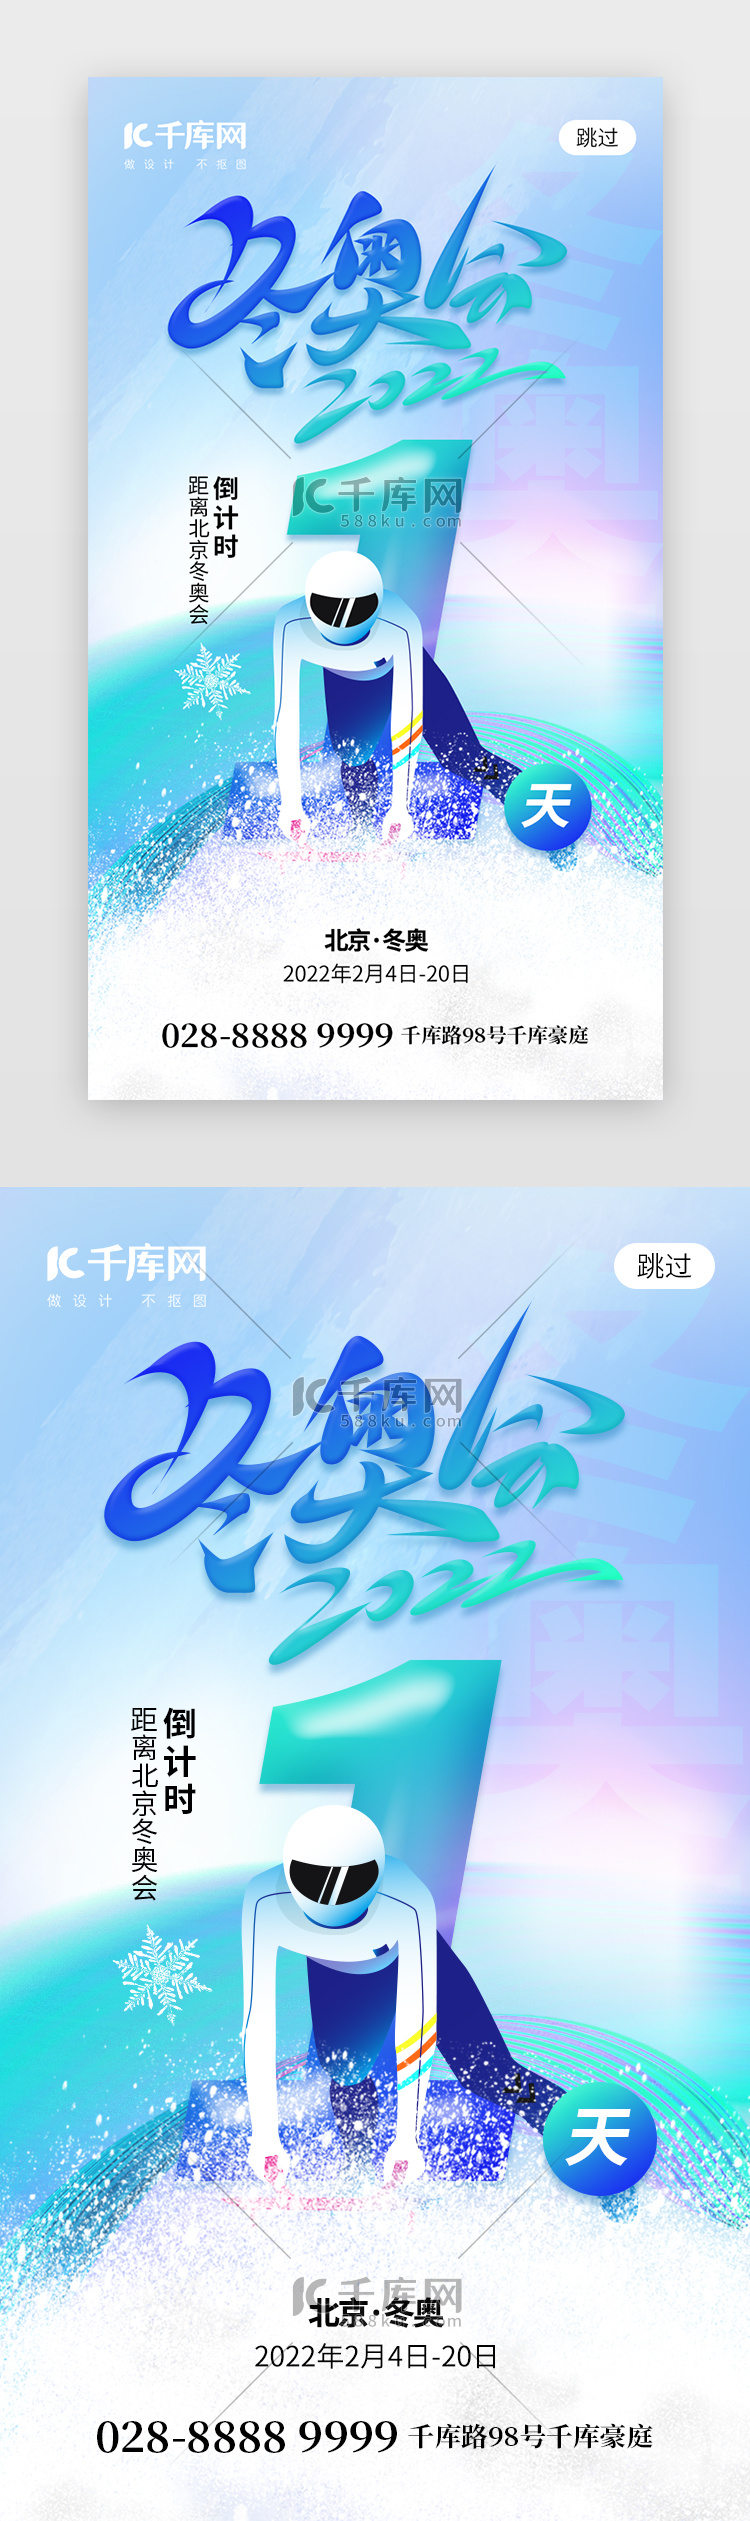 北京冬奥会倒计时1天app闪屏创意蓝色运动员